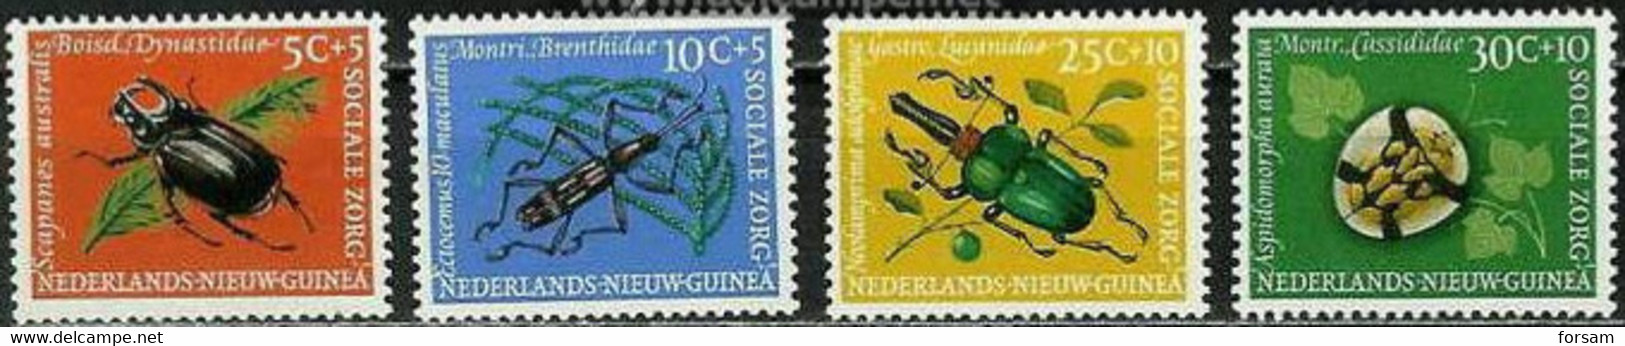 NETHERLANDS NEW GUINEA..1961..Michel # 69-72...MLH. - Nederlands Nieuw-Guinea